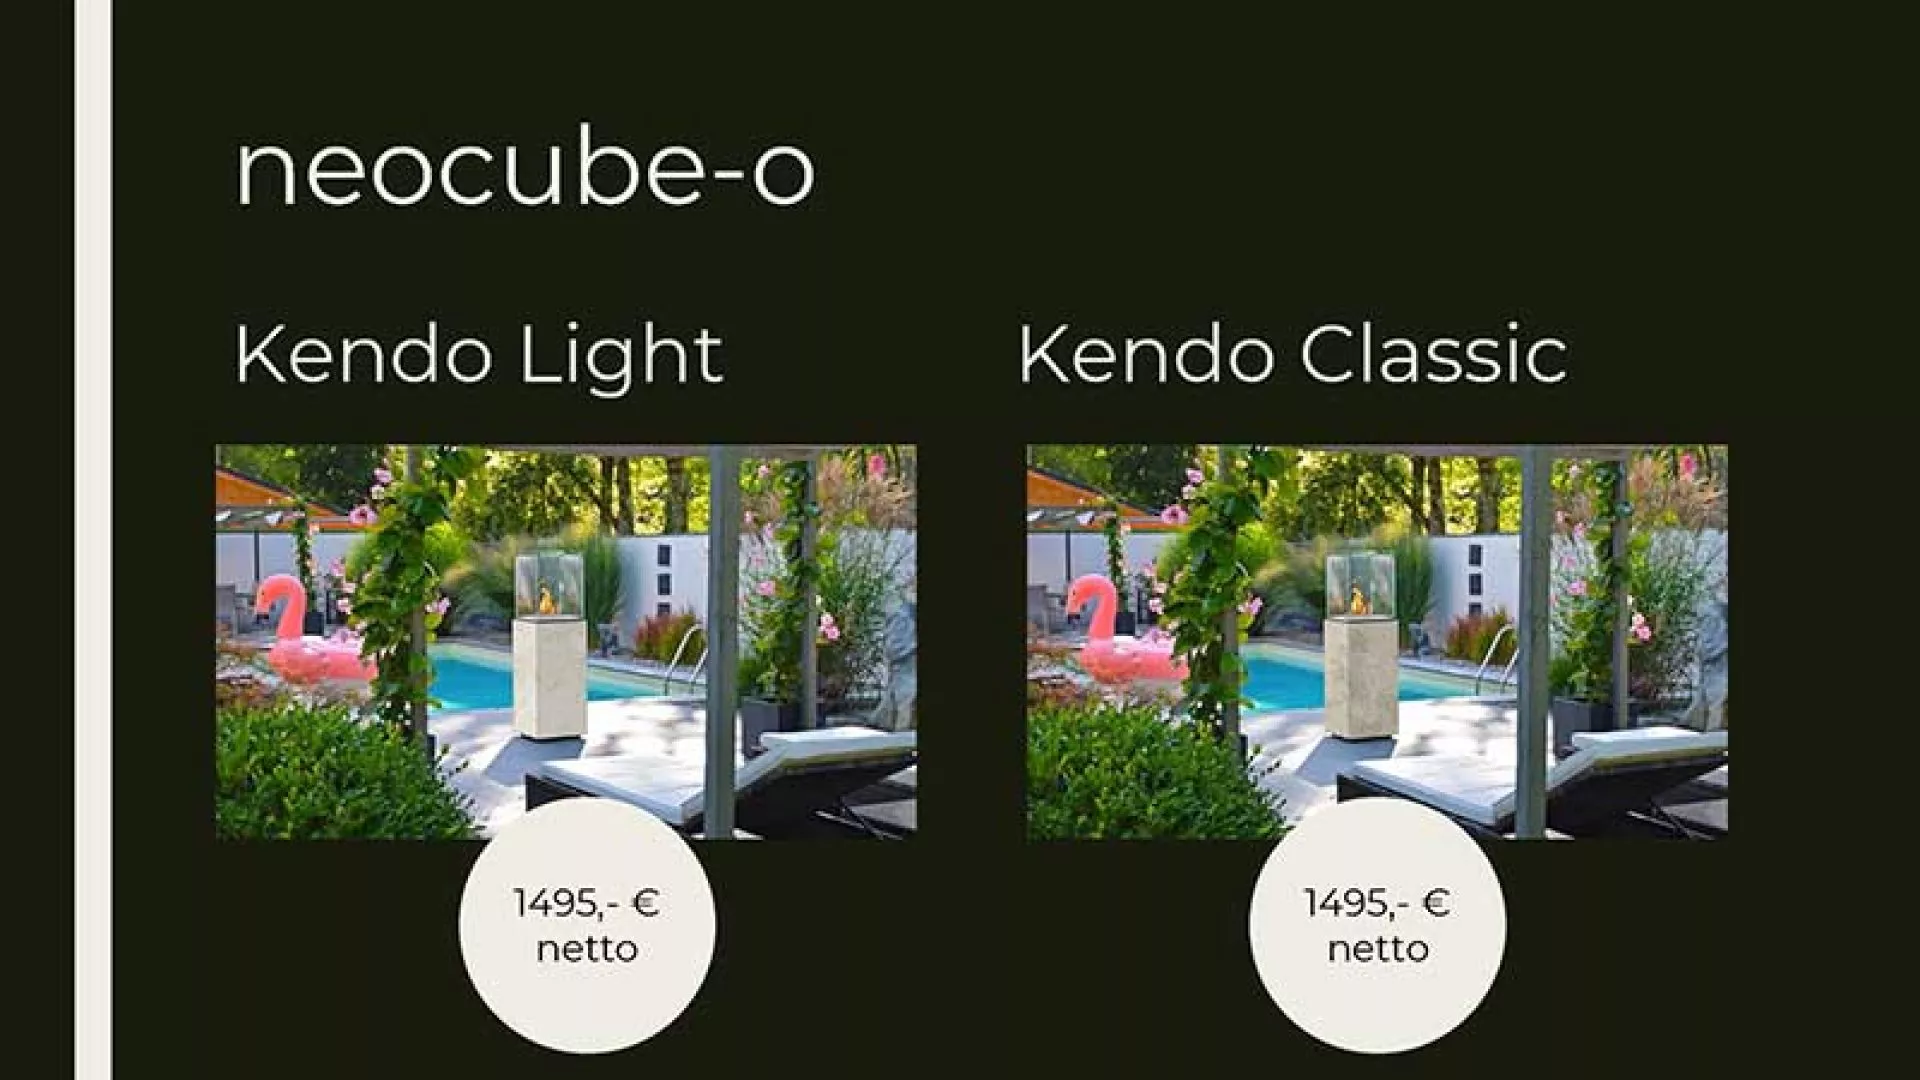 Seeberger Naturstein Sonderangebote, Outdoor Produkte sofort verfügbar, jetzt bestellen: neocube-o, Kendo Light und Kendo Classic